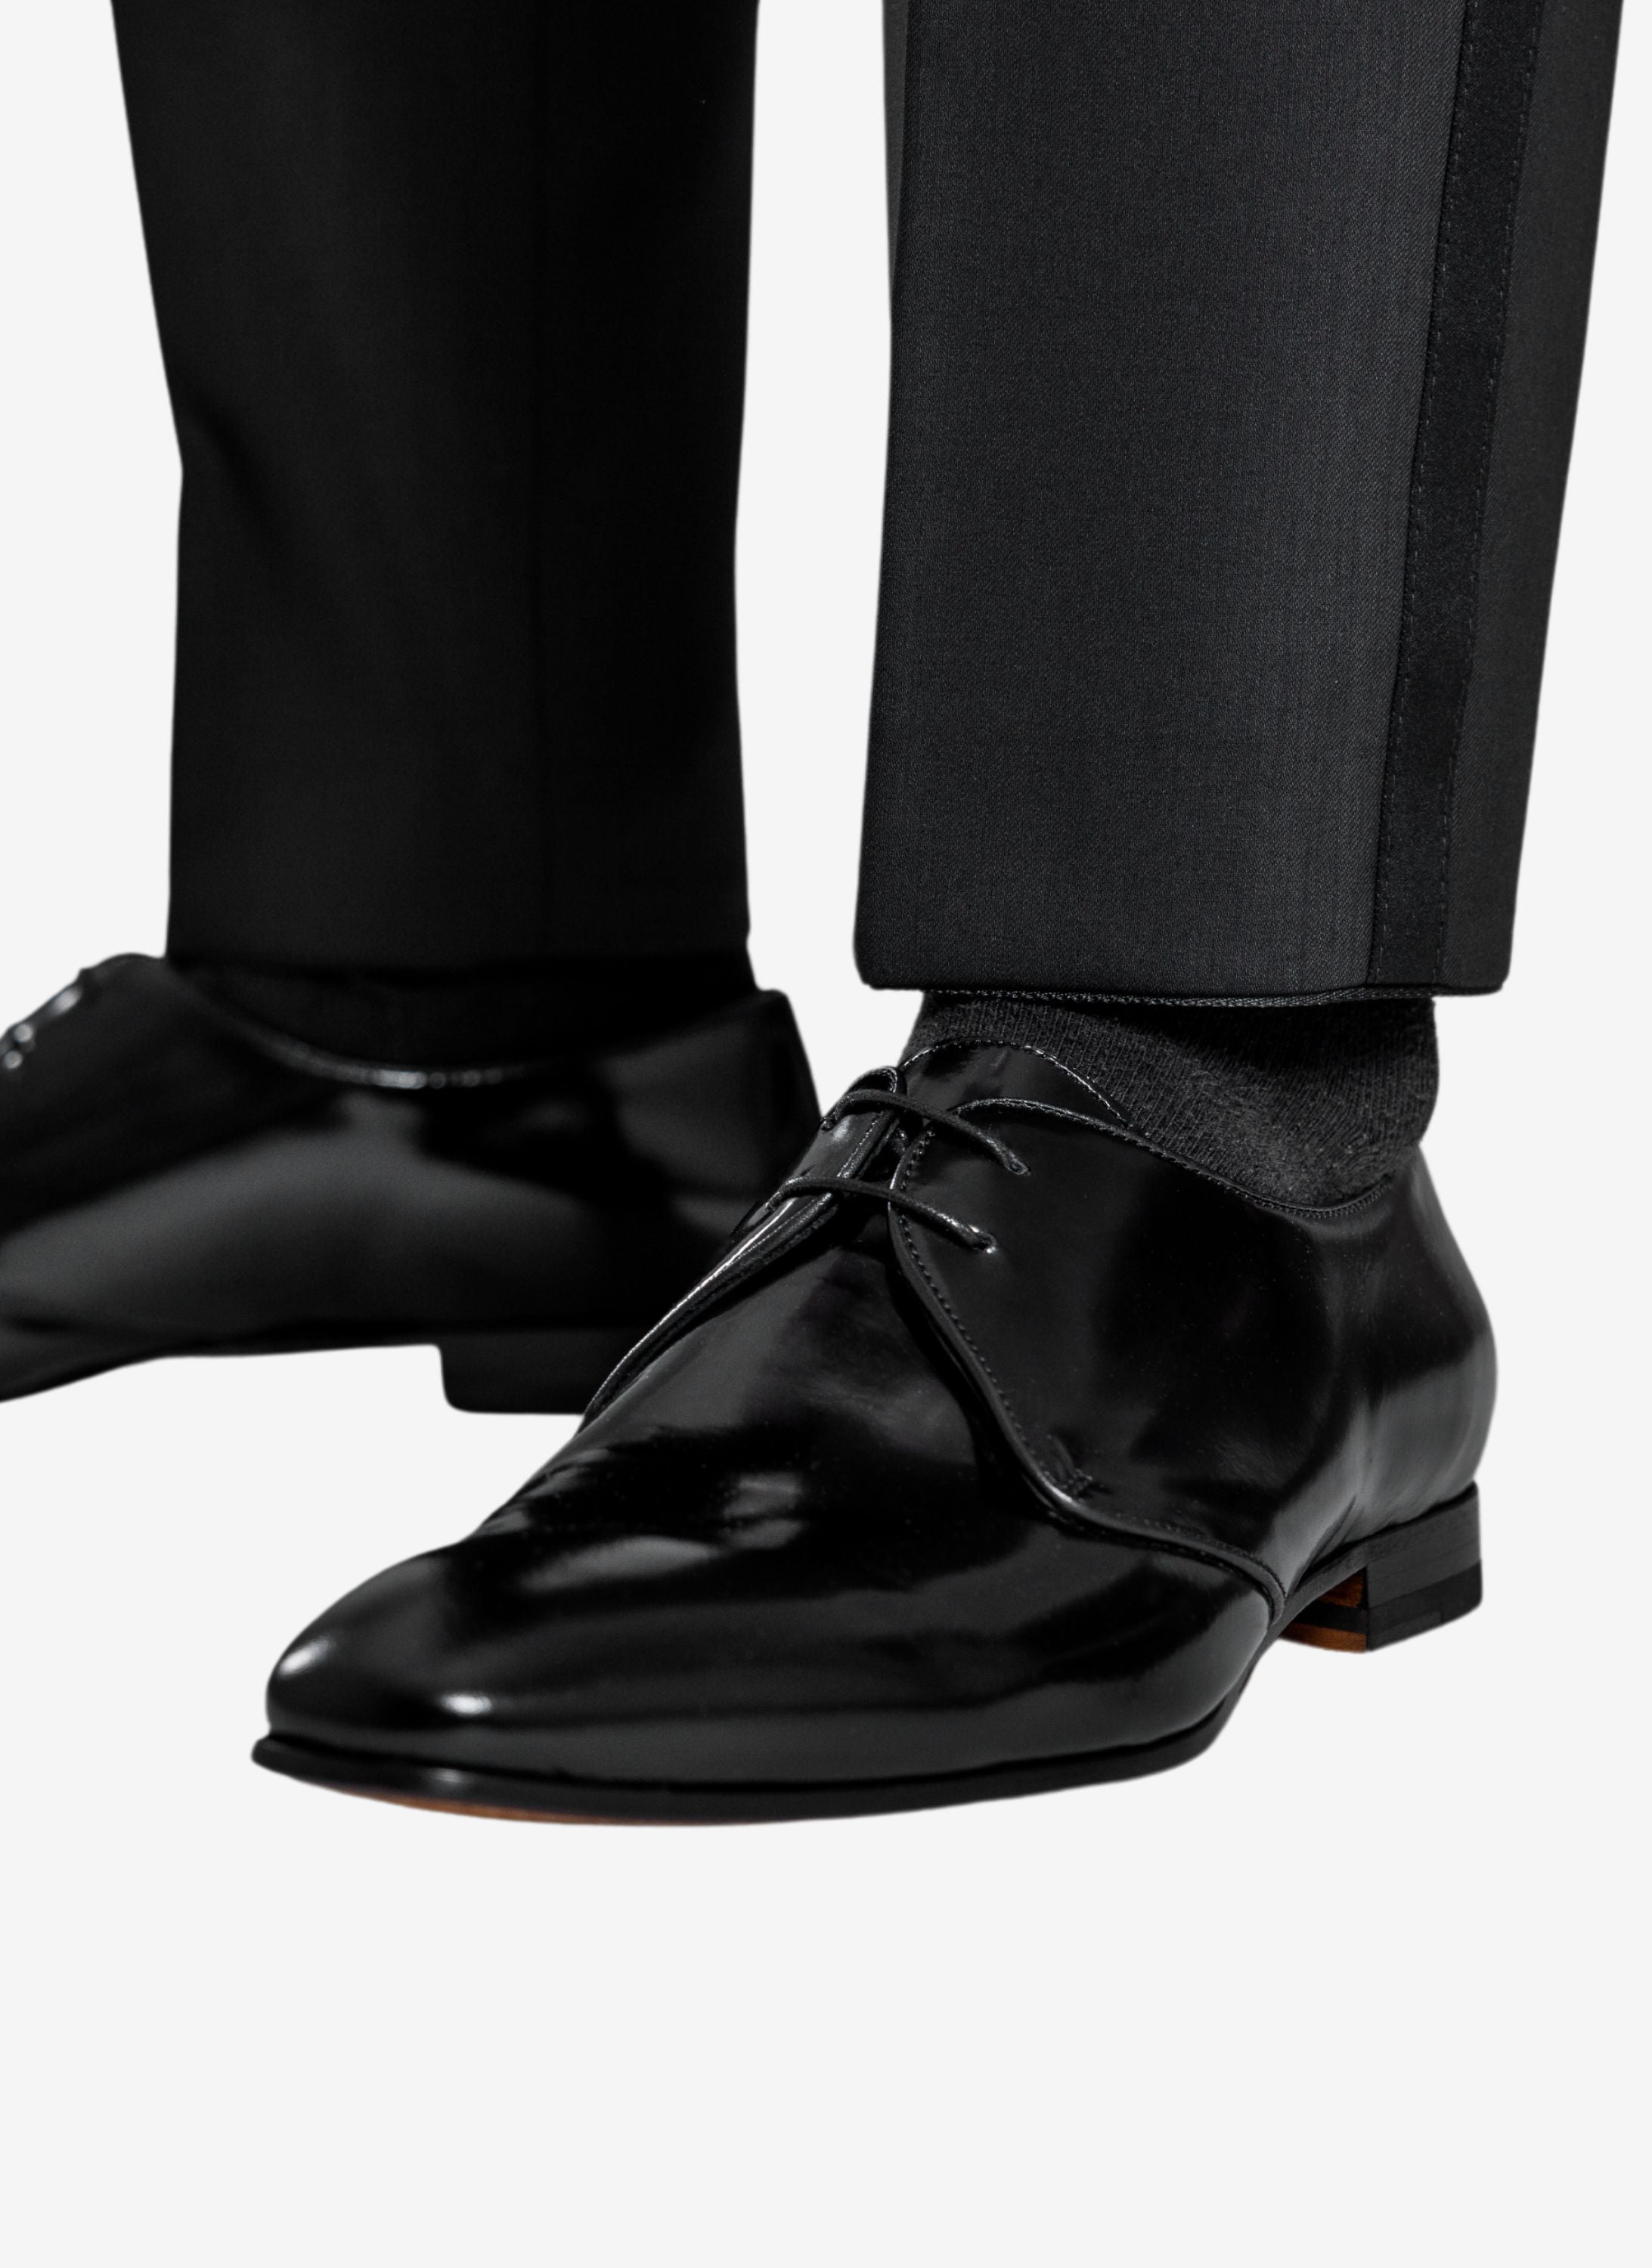 Elegante schwarz glänzende Schuhe.